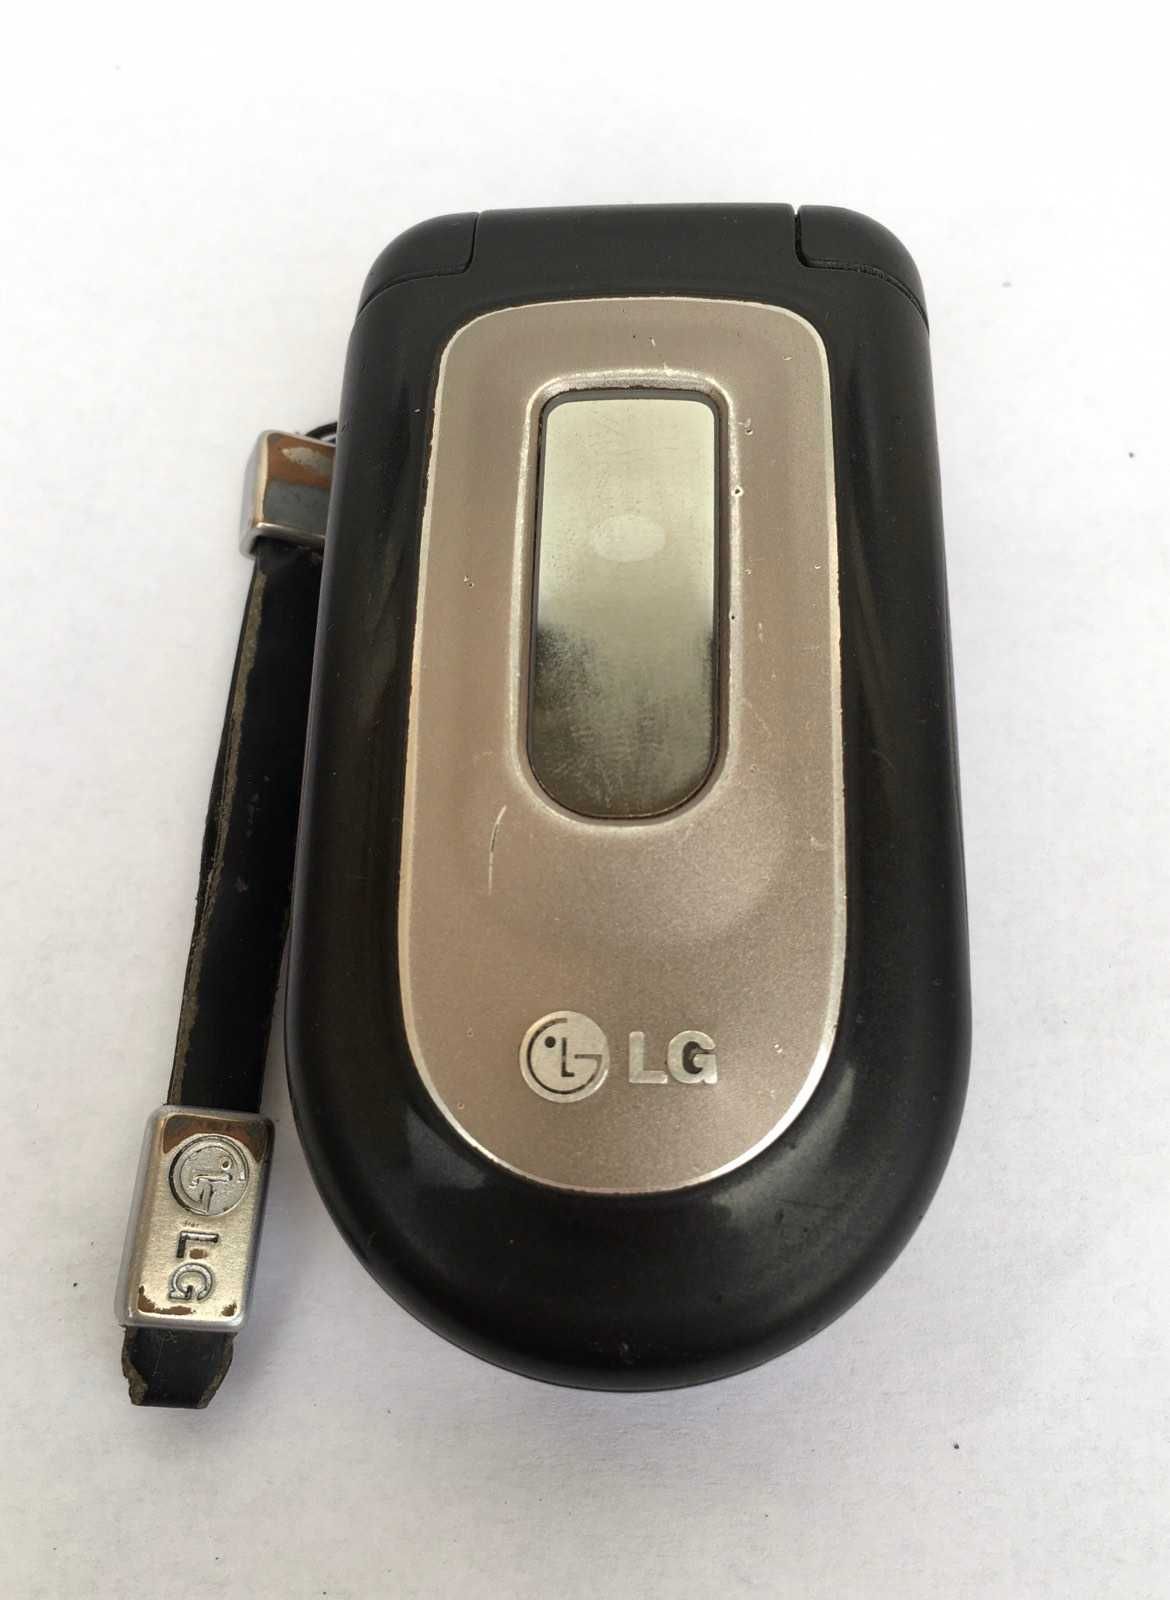 LG C 1150 Коллекционный мобильный телефон. Кнопочный Жабка Раскладушка